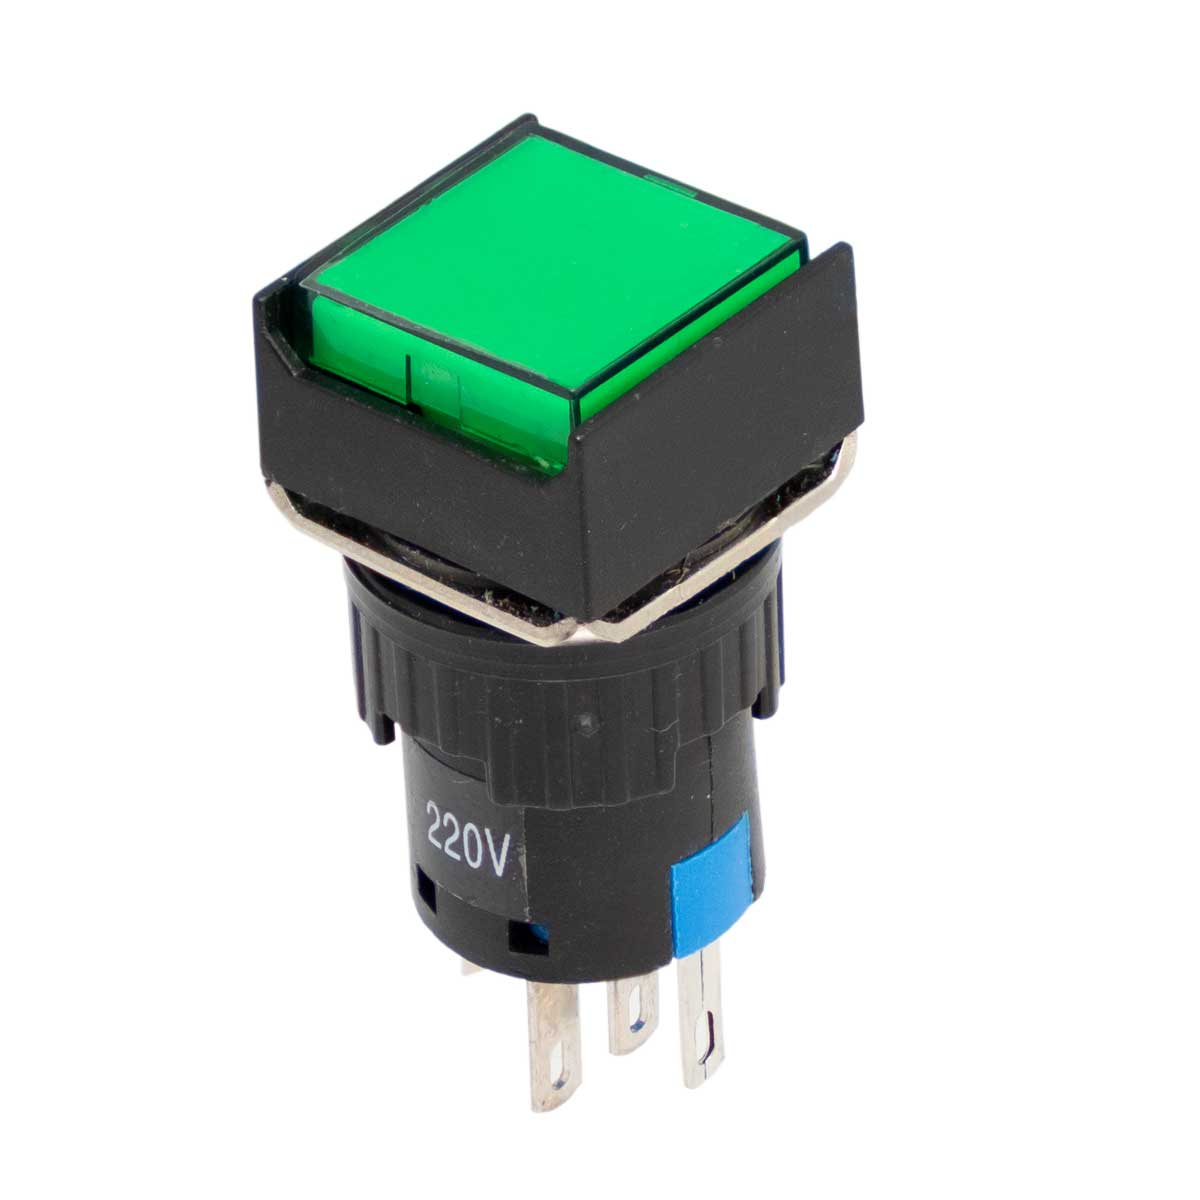 Interrupteur à bouton-poussoir lumineux vert (SPST), montage sur panneau, 3A/220V